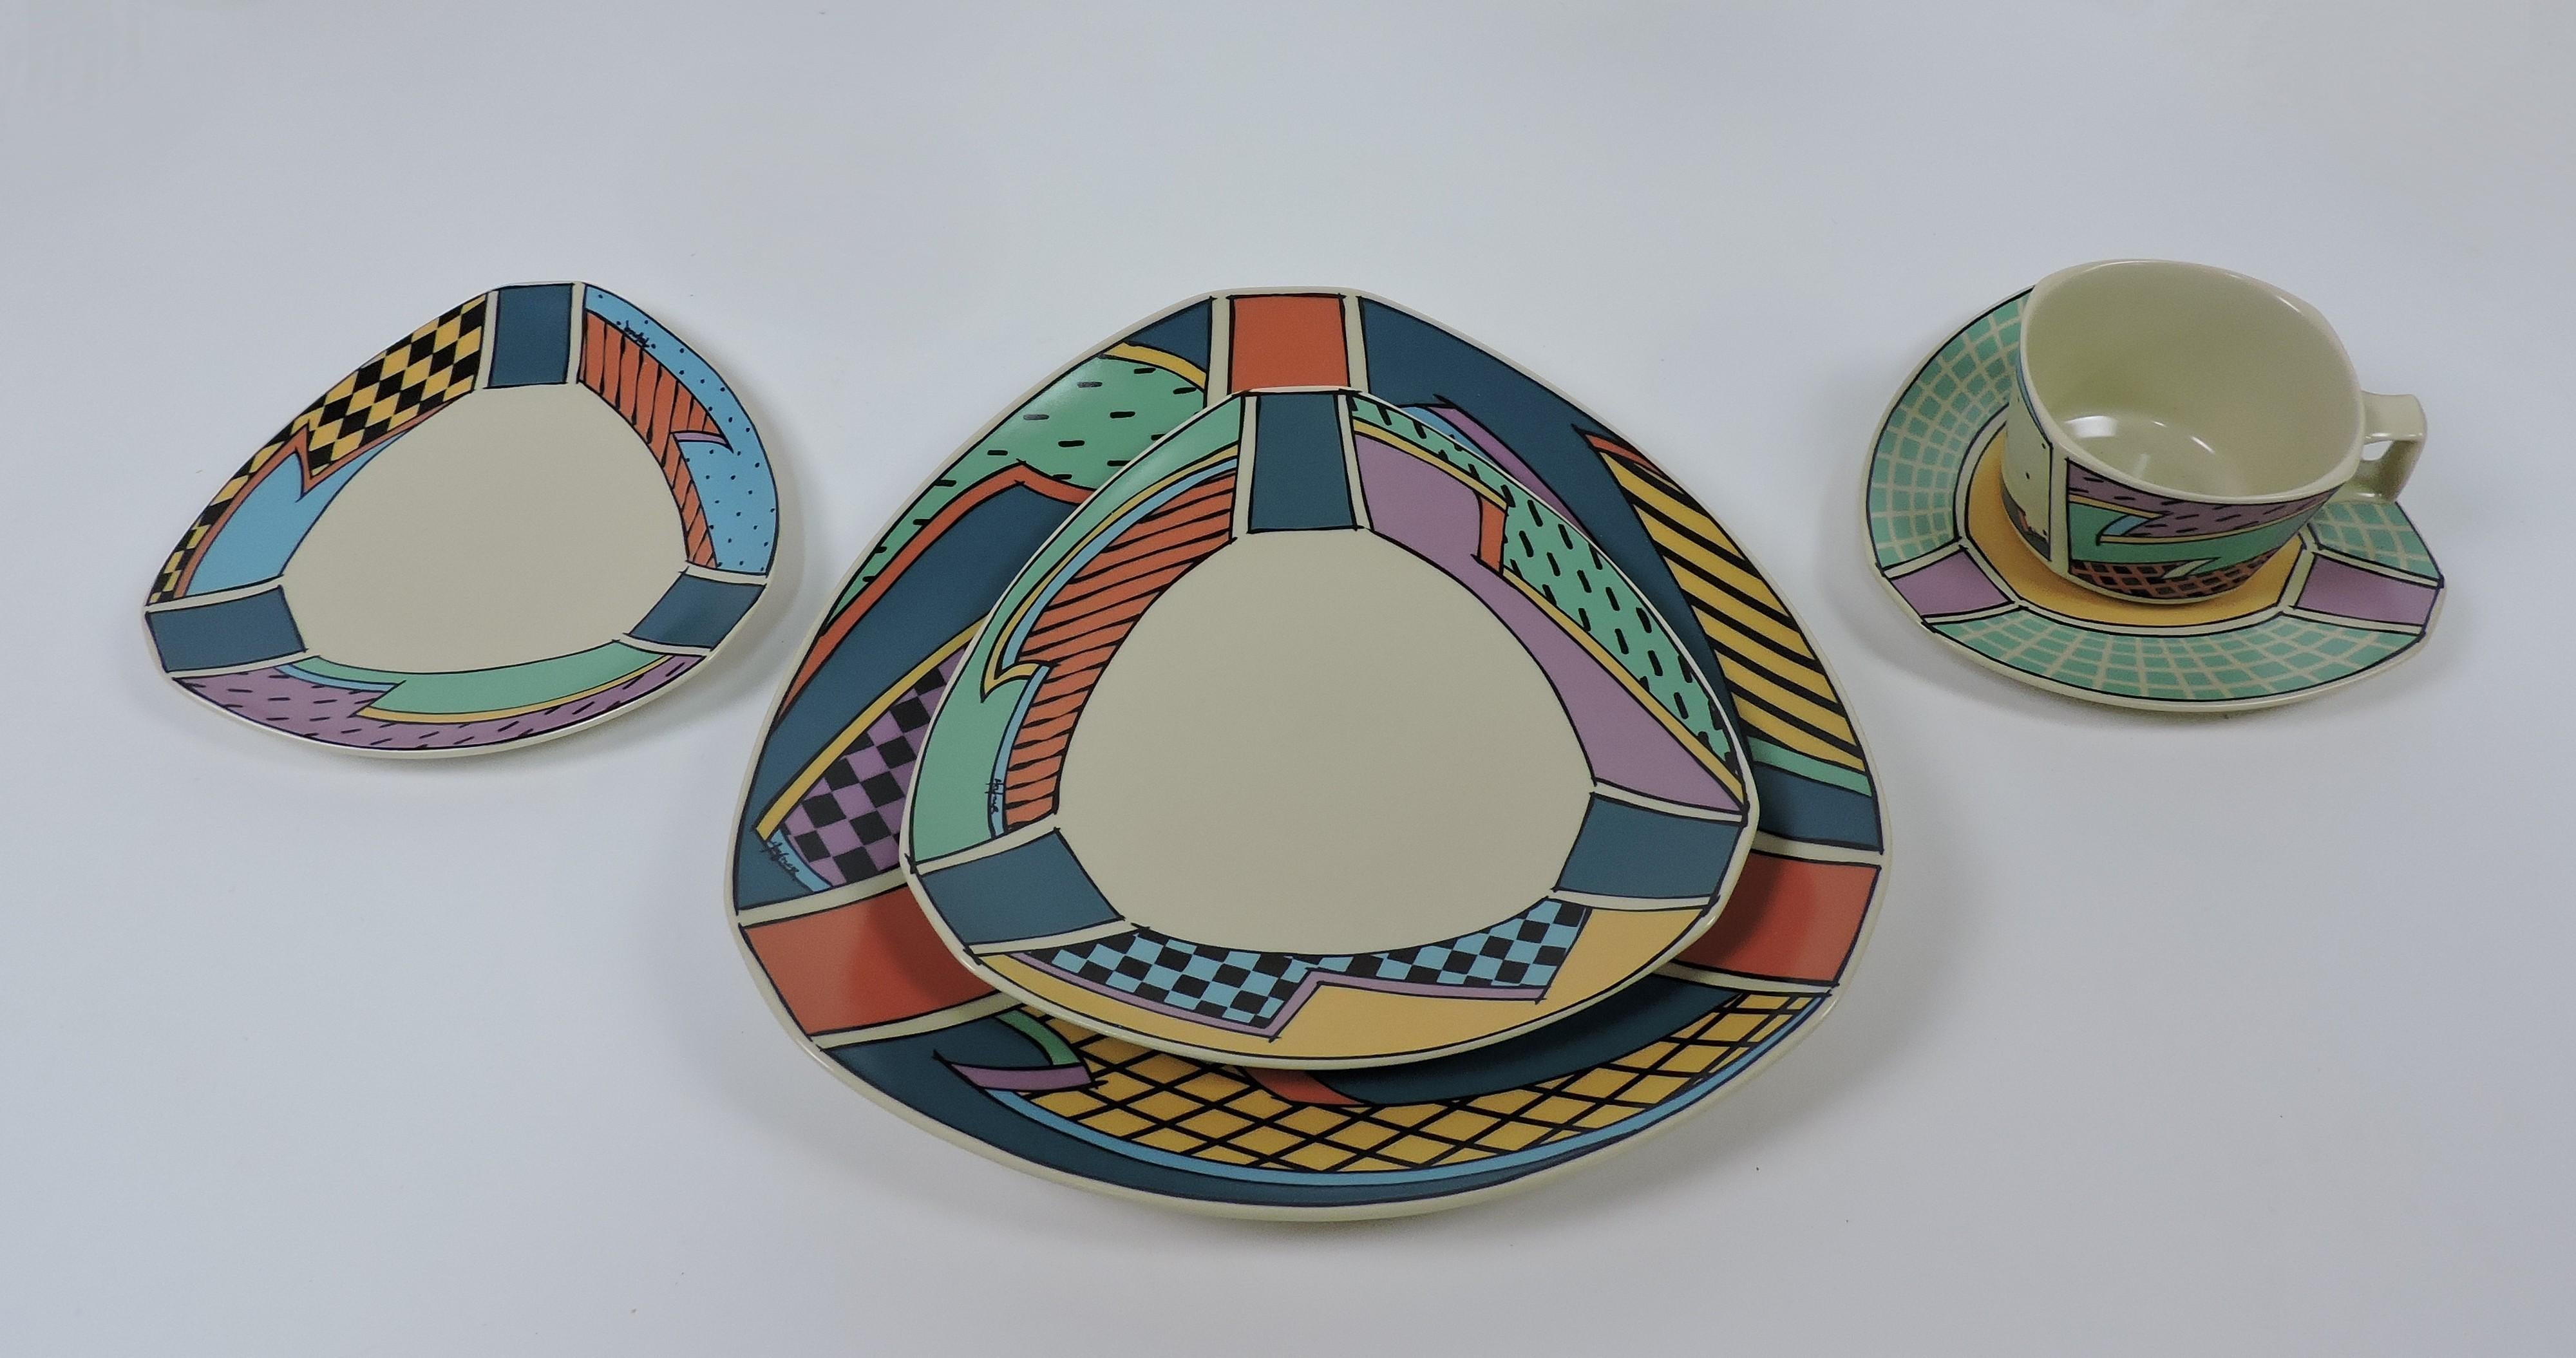 Grand service de vaisselle en porcelaine de style Memphis de la série Flash pour douze personnes, conçu en 1982 par la célèbre céramiste et artiste verrière américaine Dorothy Hafner et fabriqué en Allemagne par Rosenthal. Cet ensemble emblématique